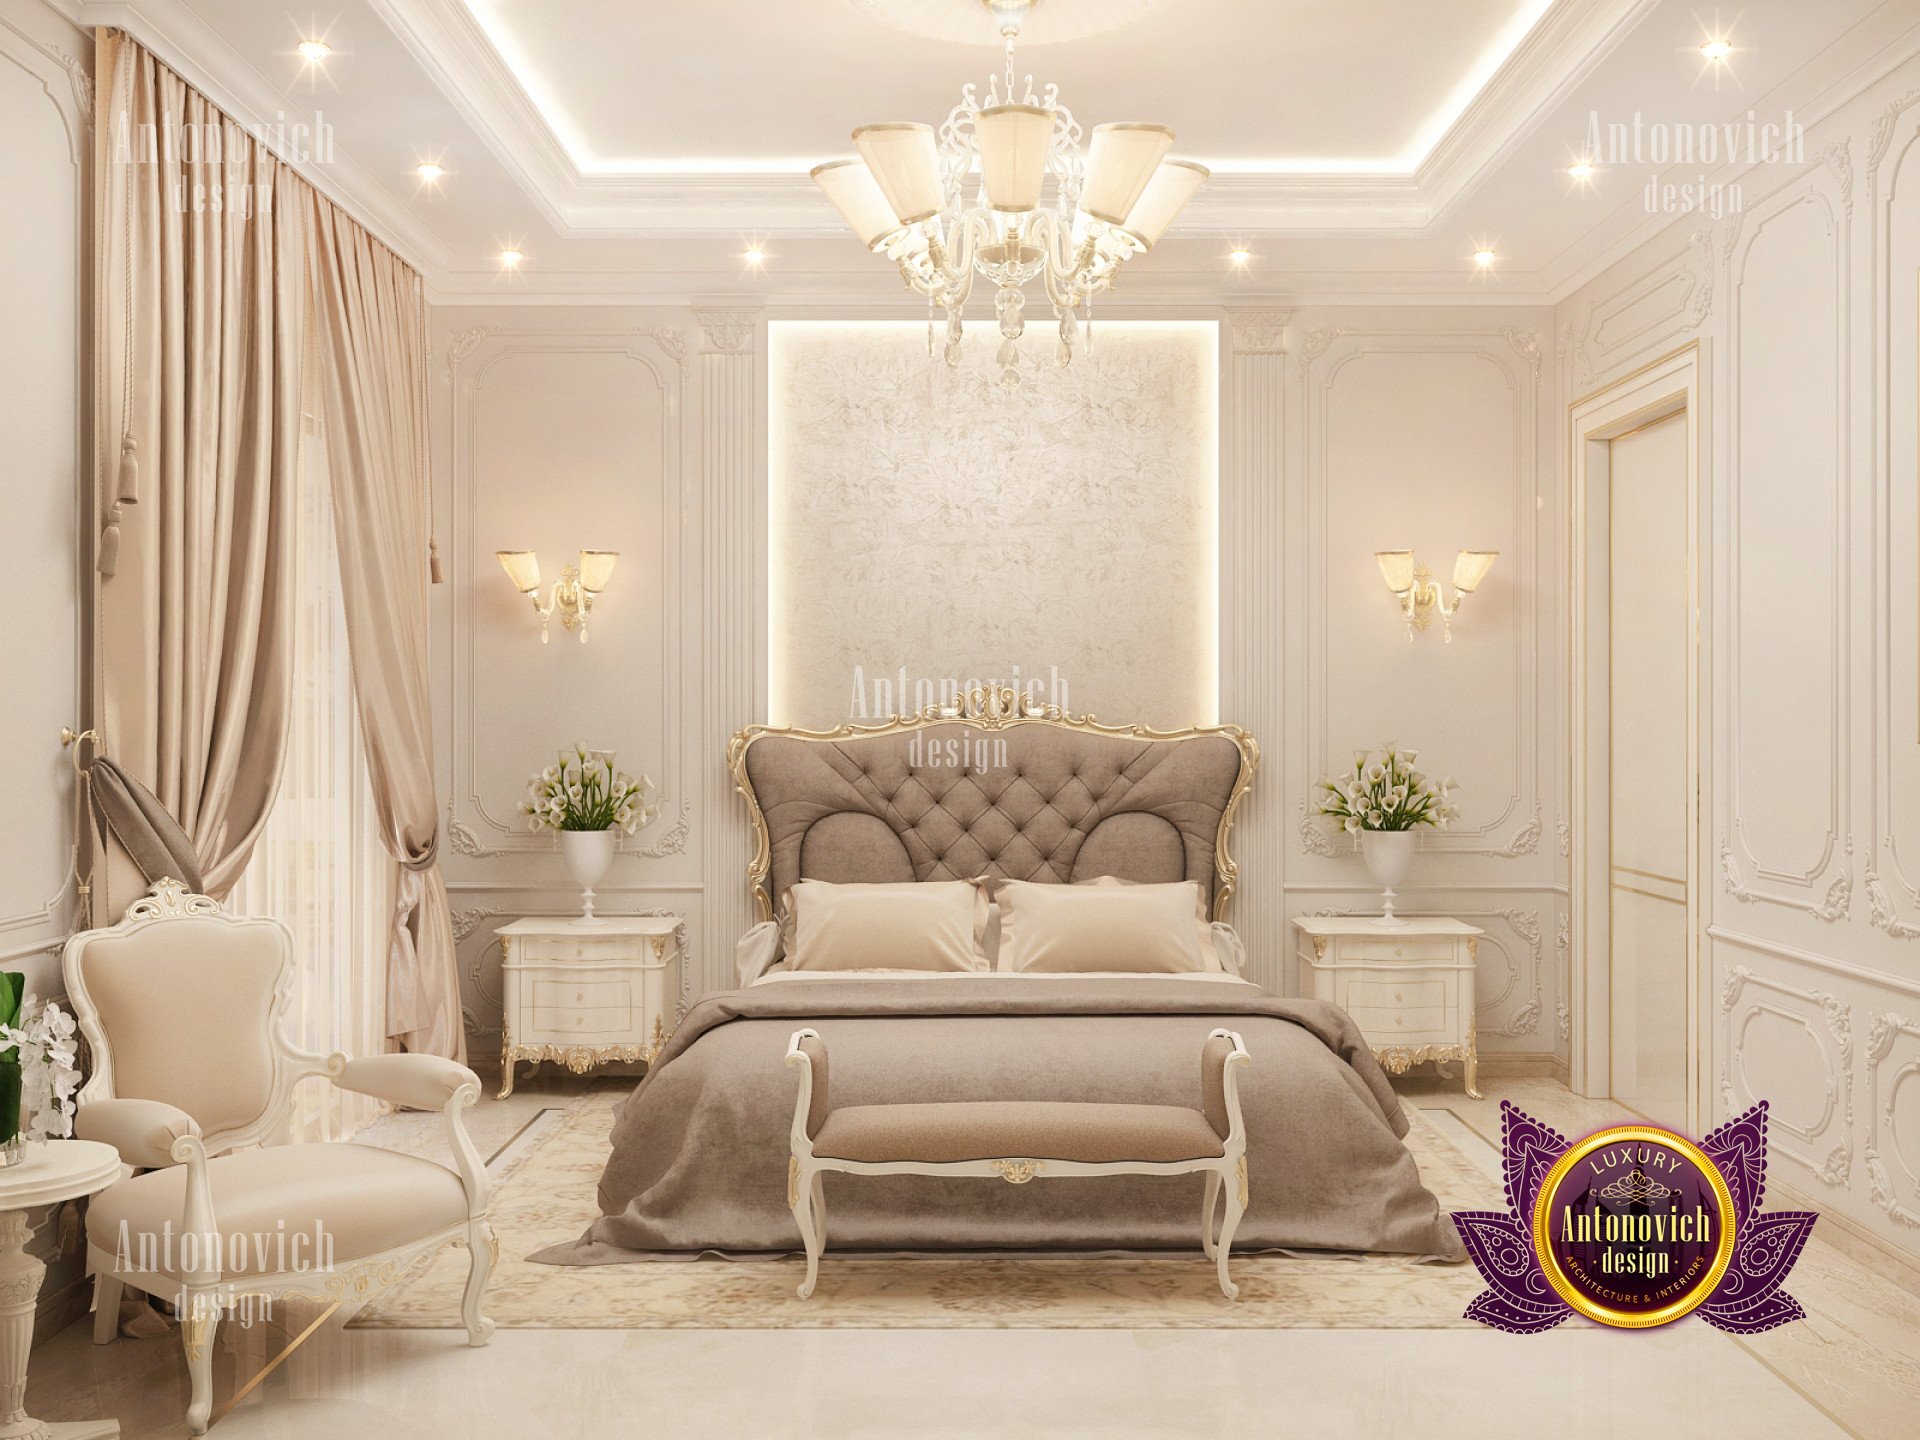 Luxury bedroom interior decoration